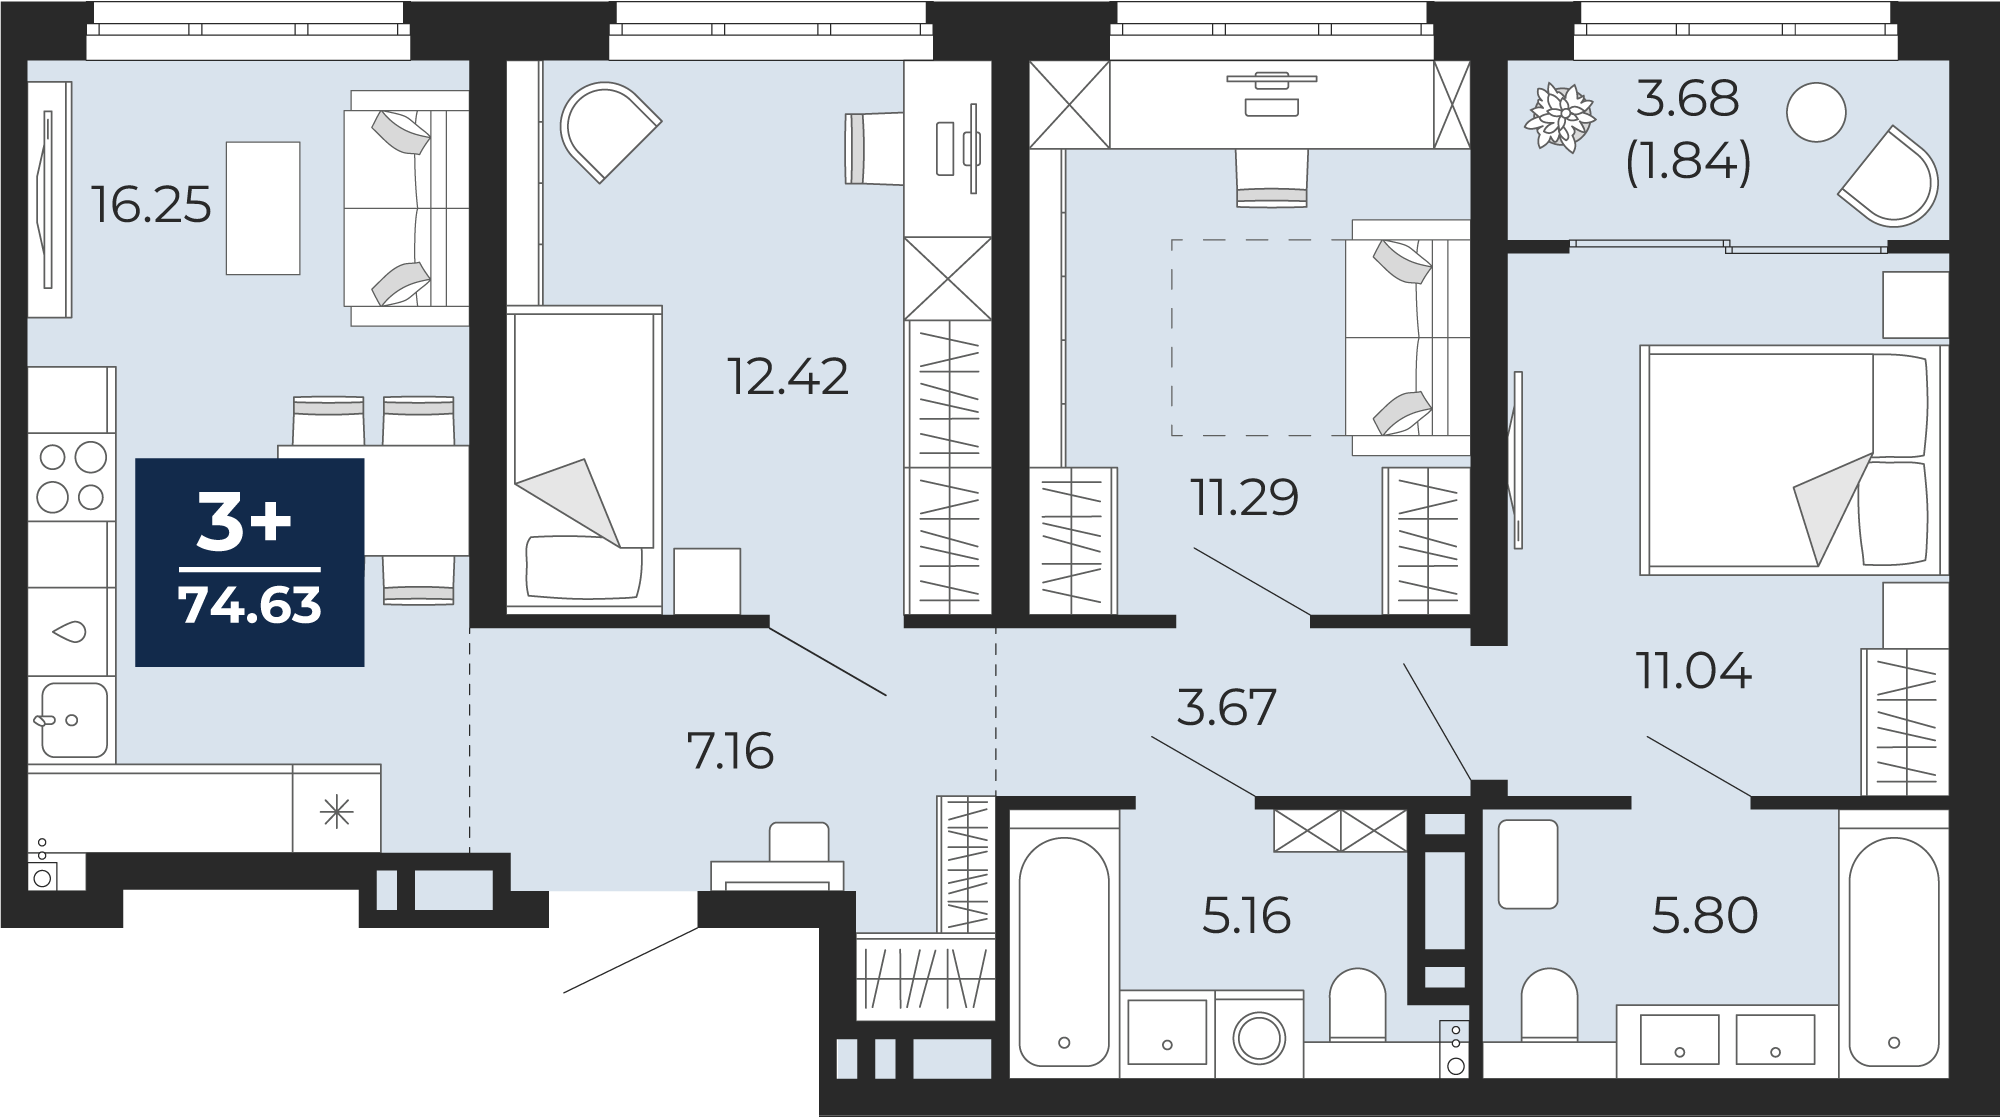 Квартира № 217, 3-комнатная, 74.63 кв. м, 3 этаж